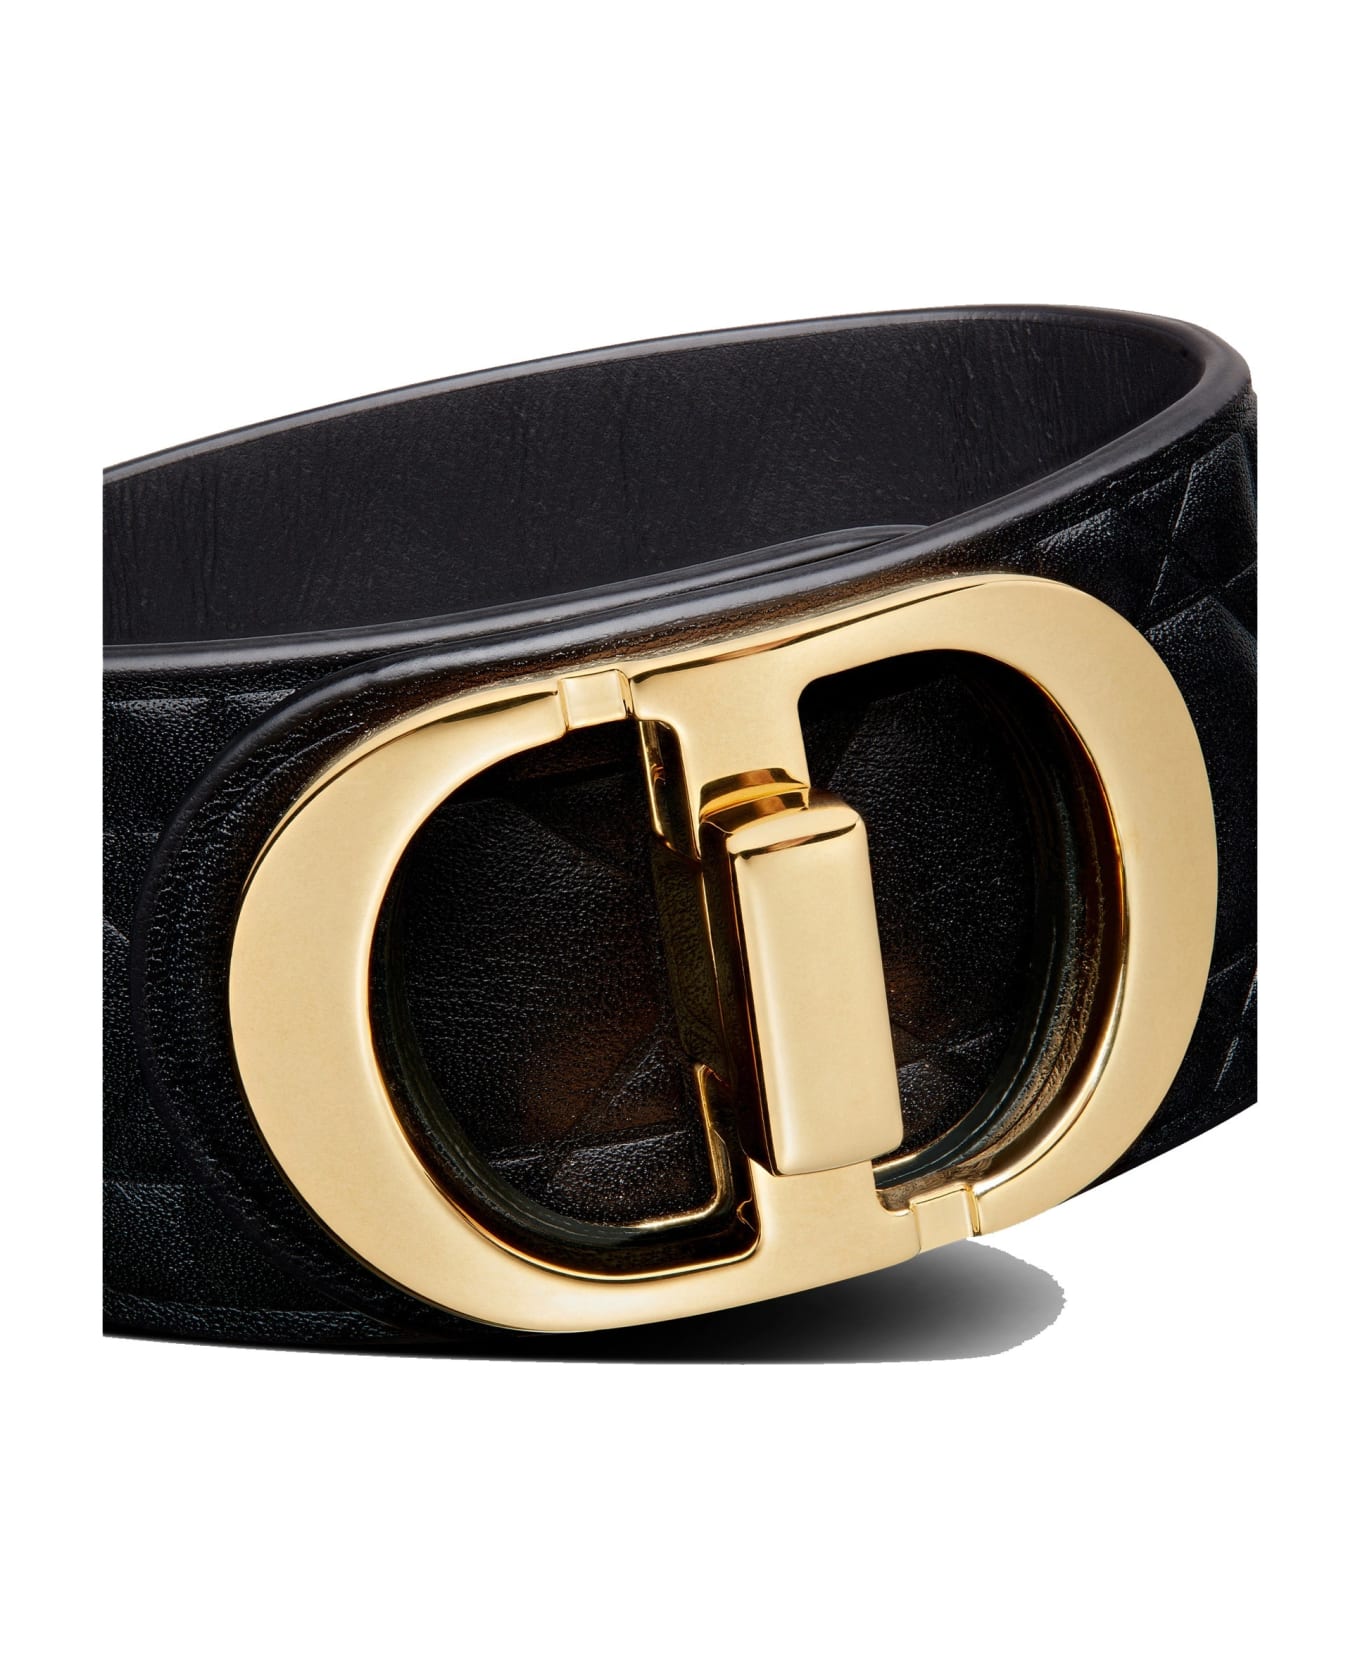 Dior Logo Cannage Leather Bracelet - Black